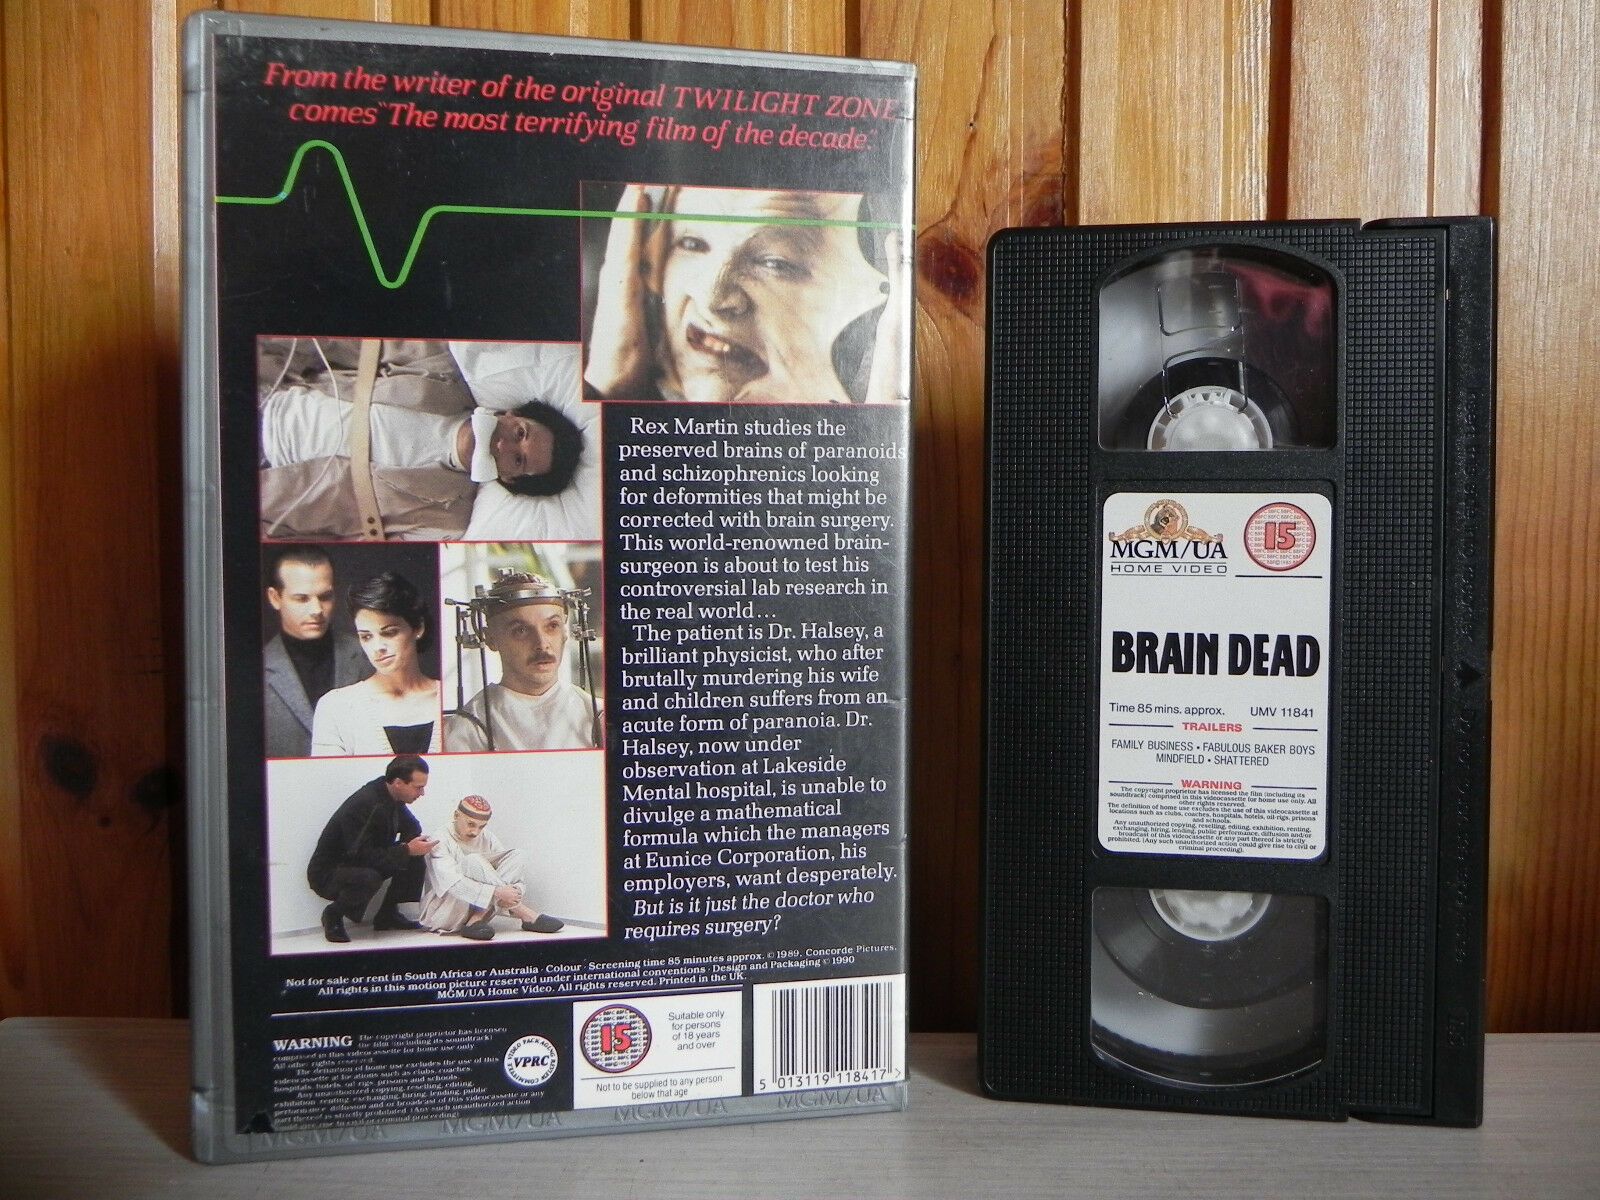 Brain Dead - MGM/UA Home Video - Bill Pullman - Bill Paxton - Bud Cort - Pal VHS-